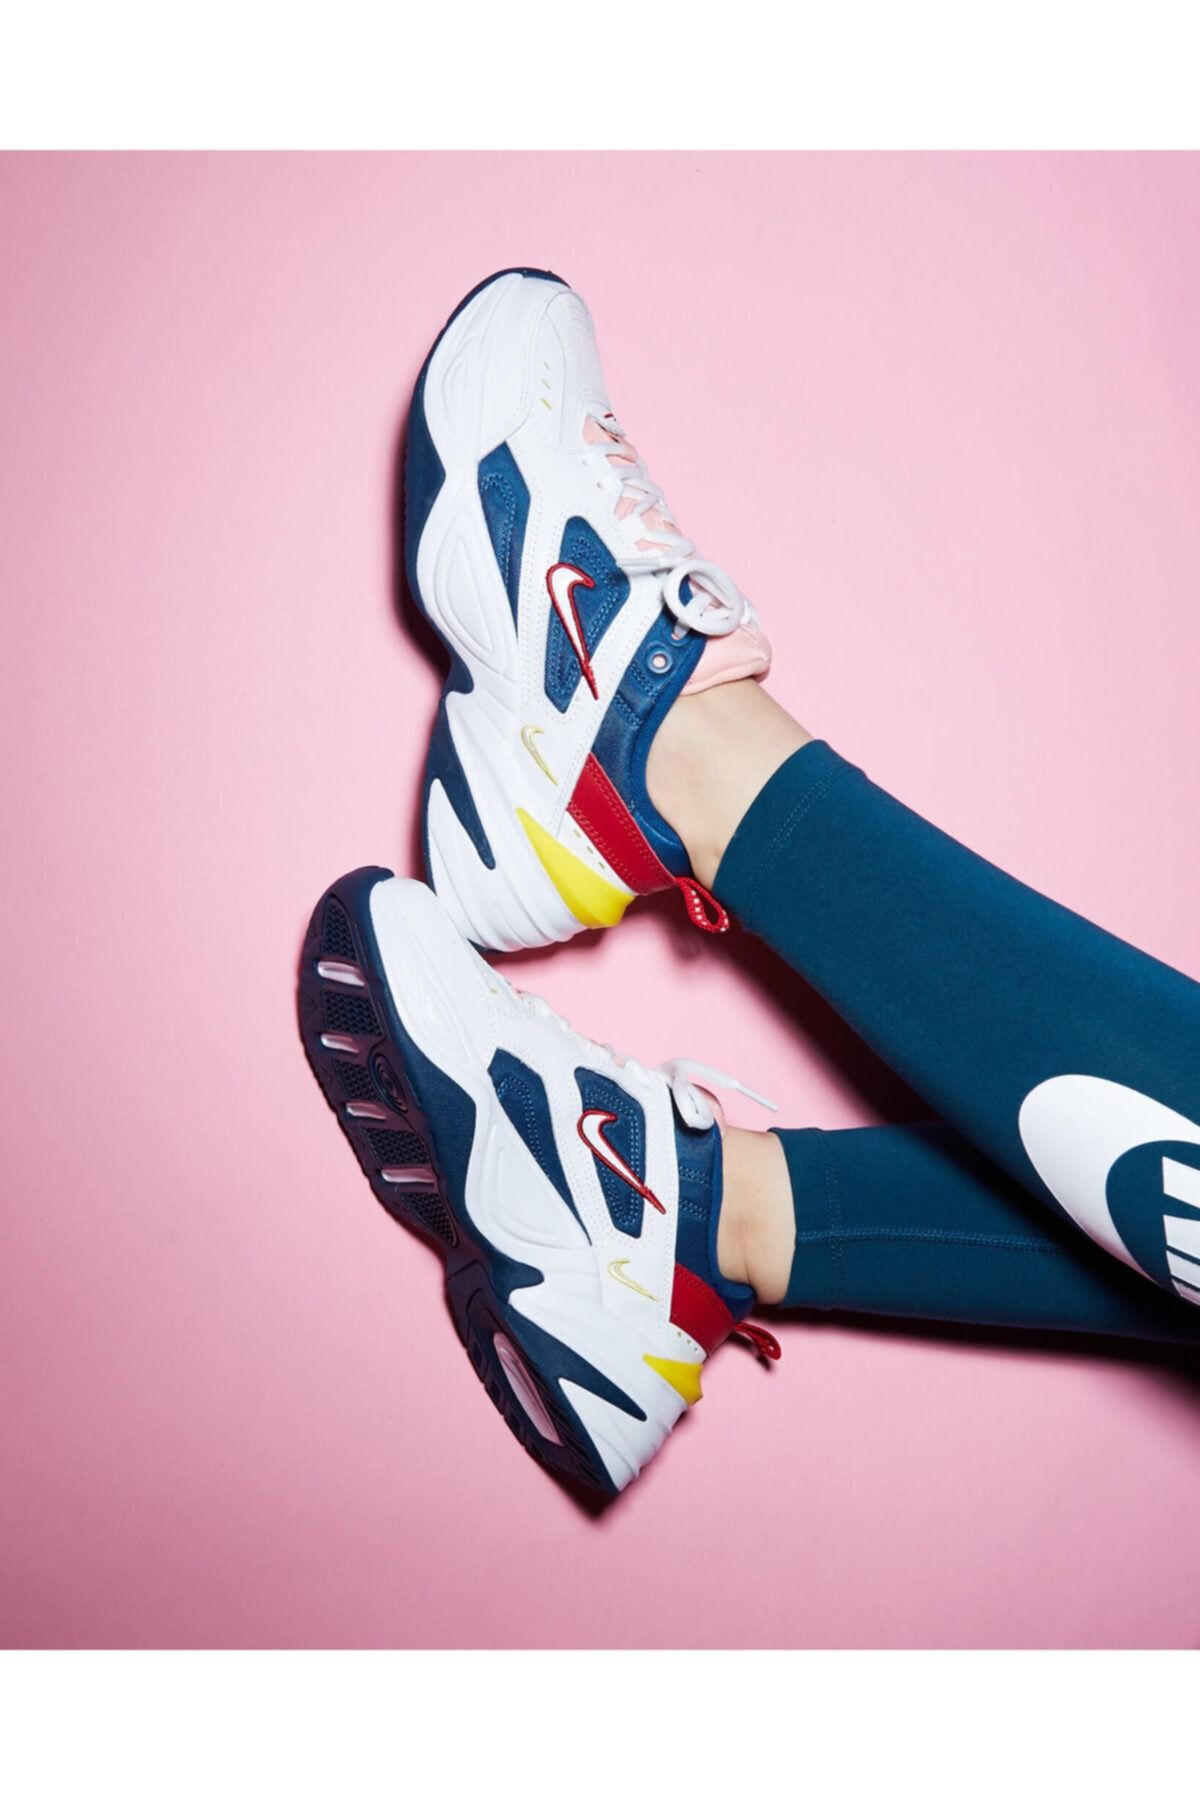 Nike Kadın M2k Tekno Ayakkabısı